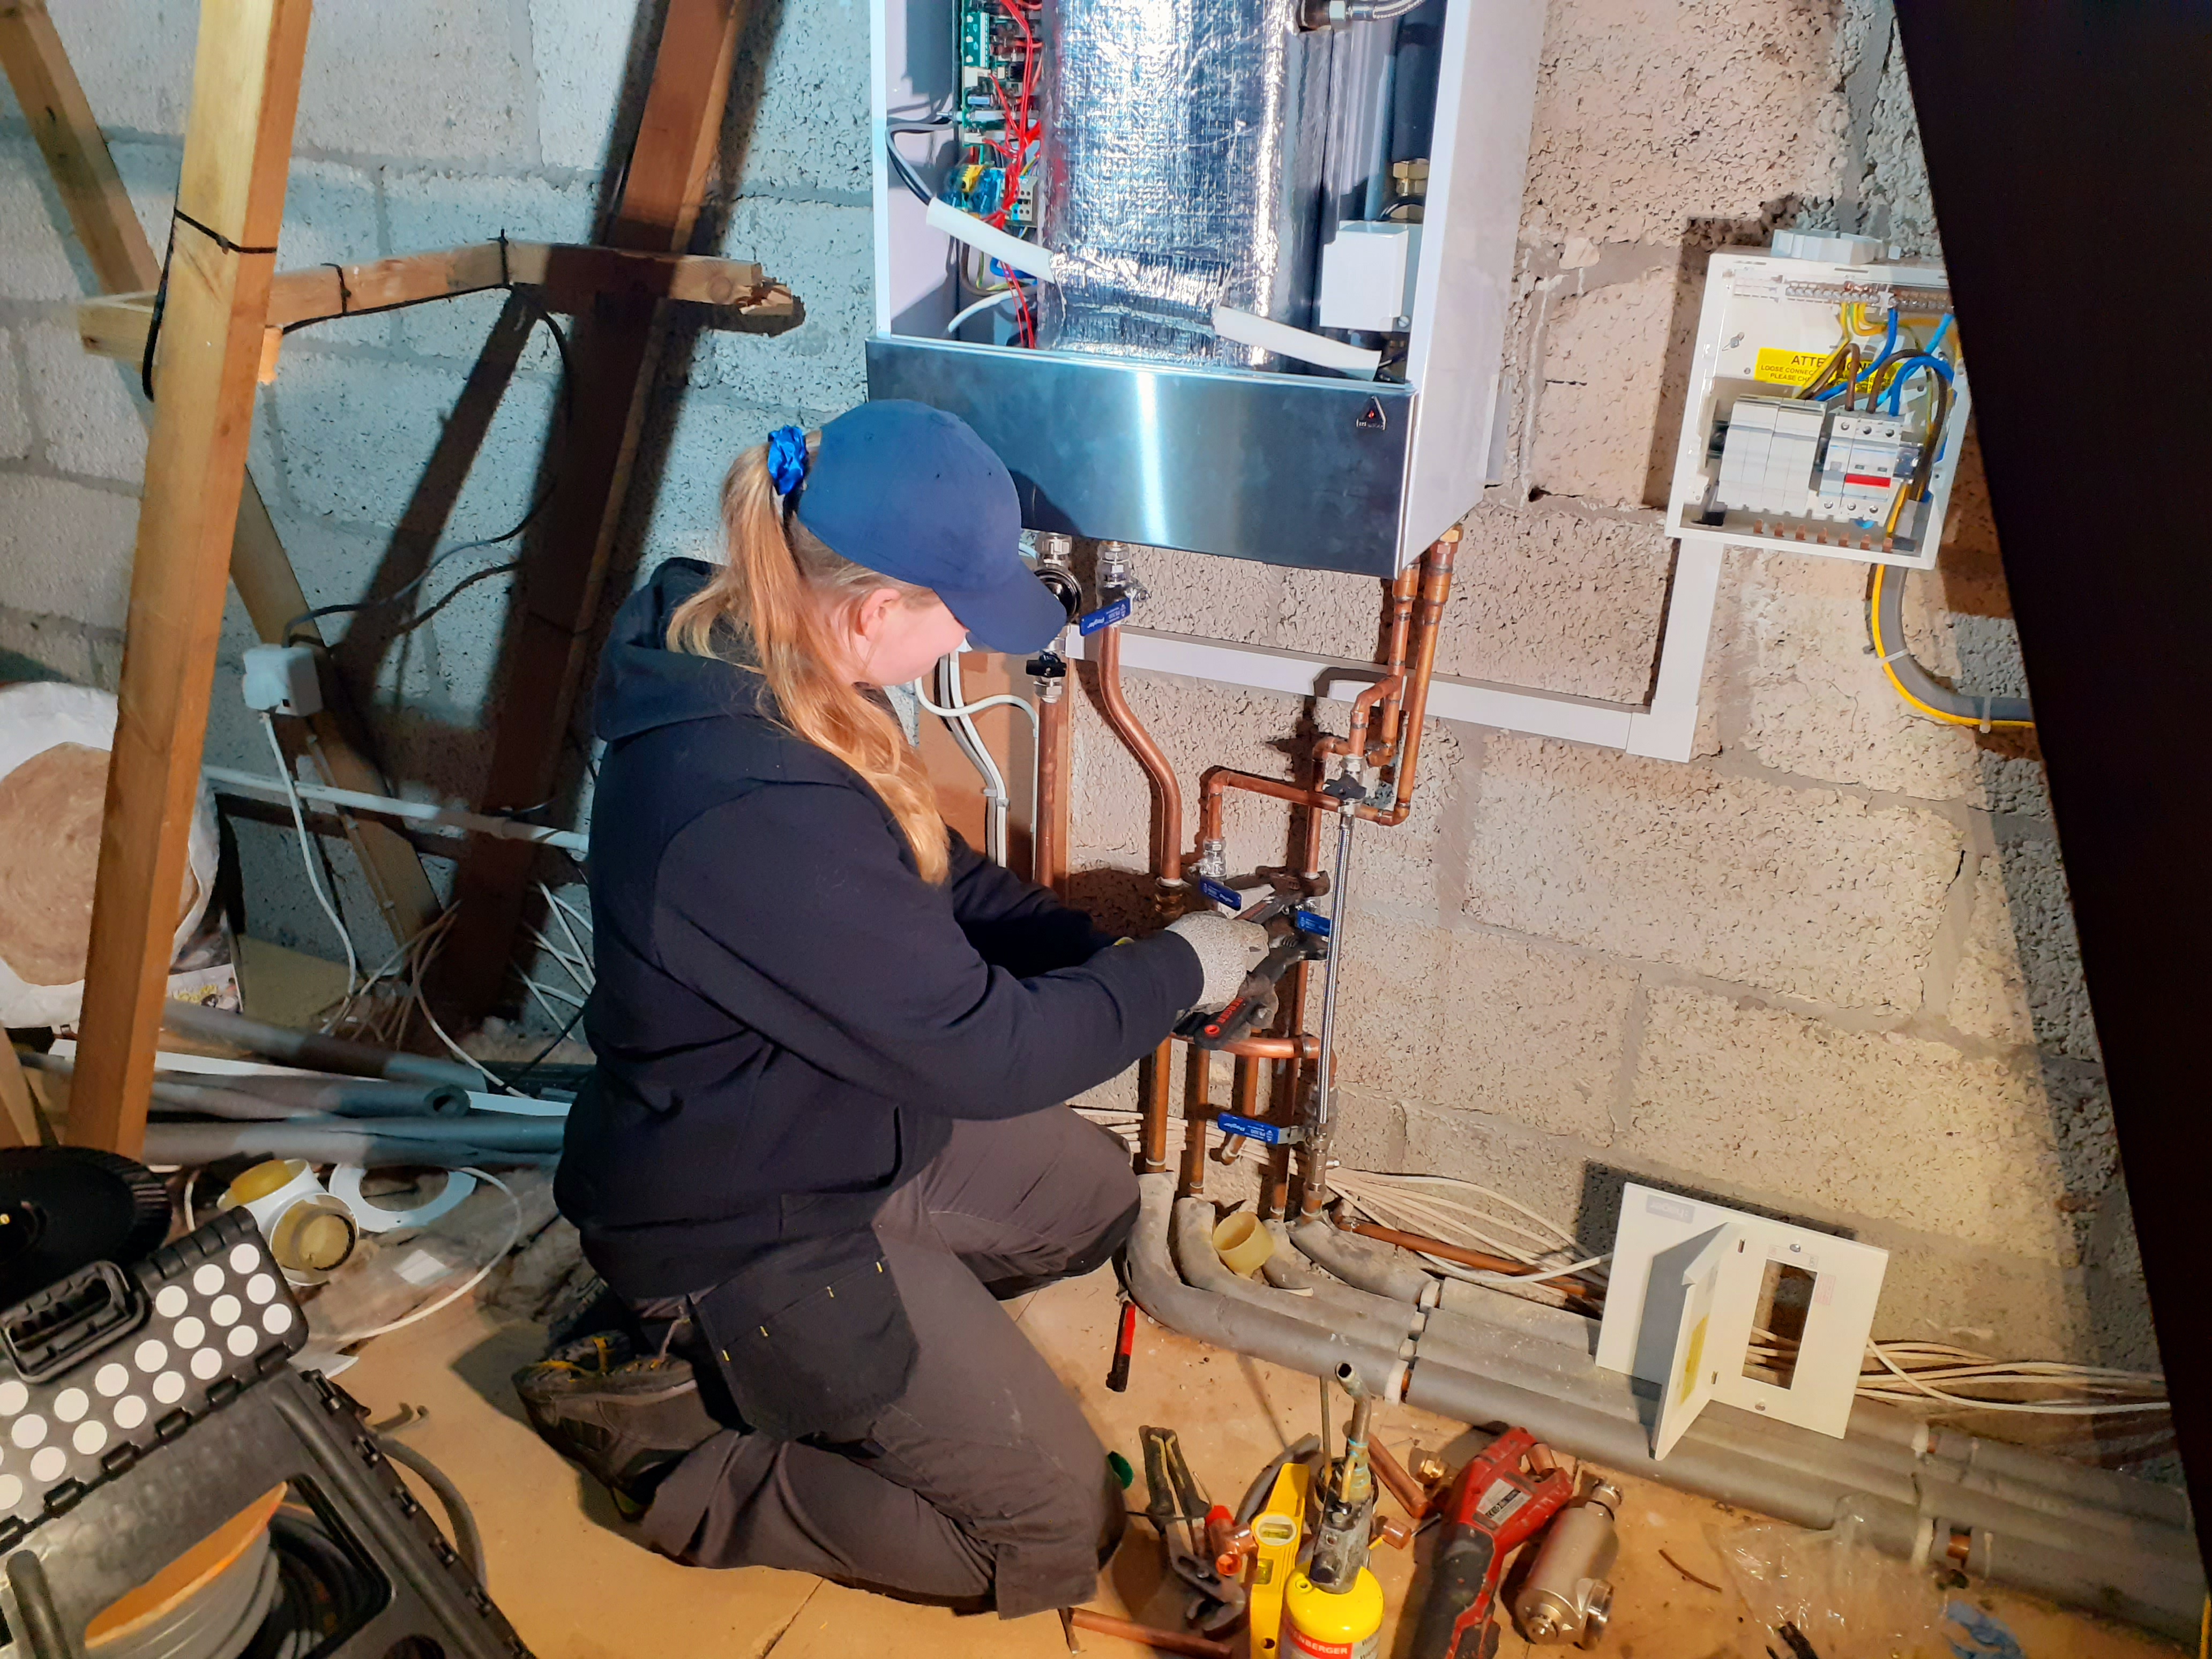 Taneisha De Gruchy installing a boiler